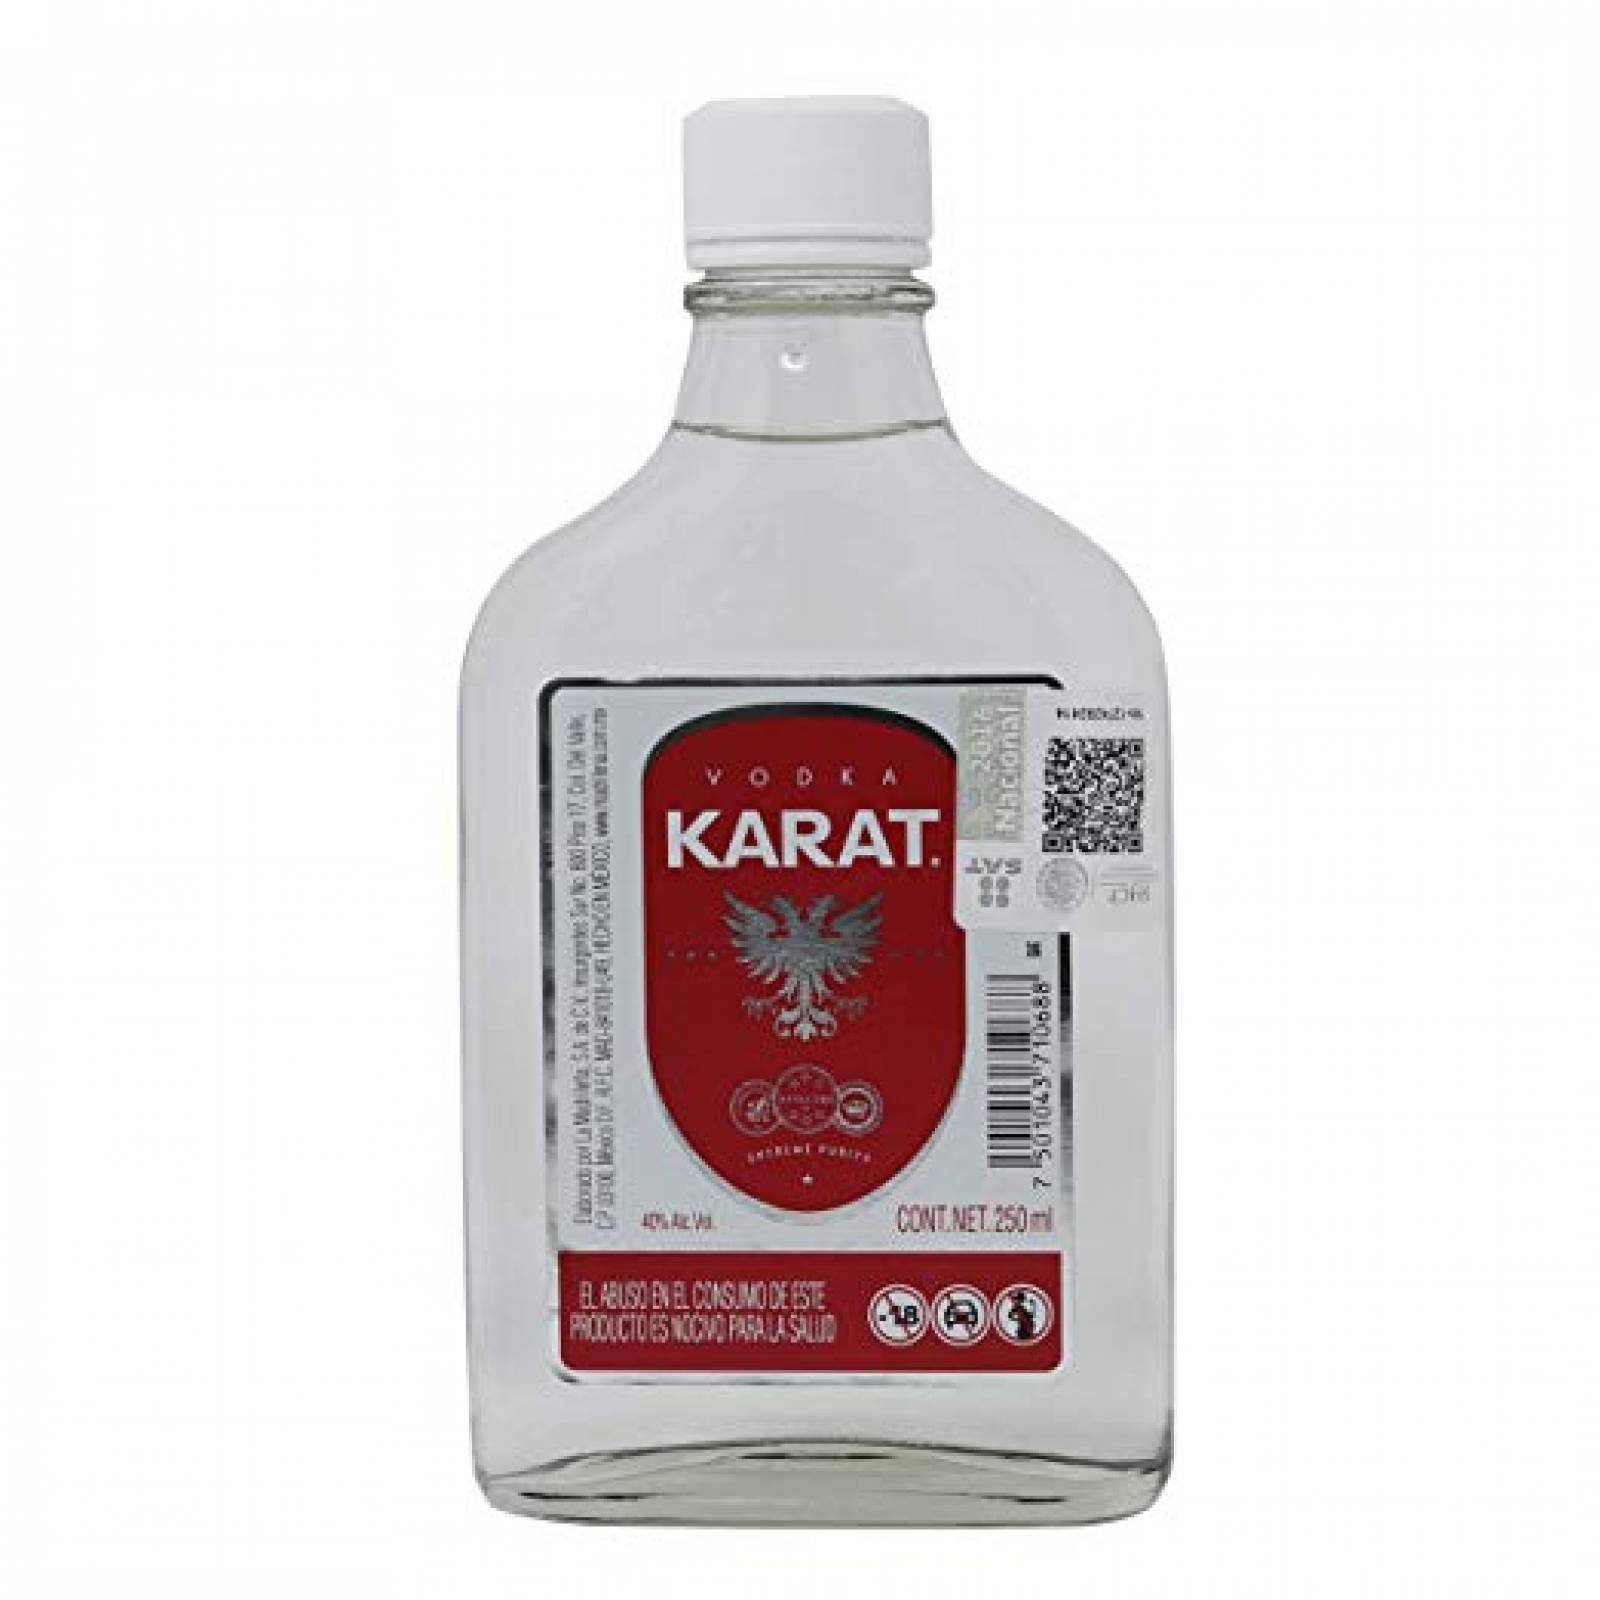 Vodka Nacional Karat 250 Ml.